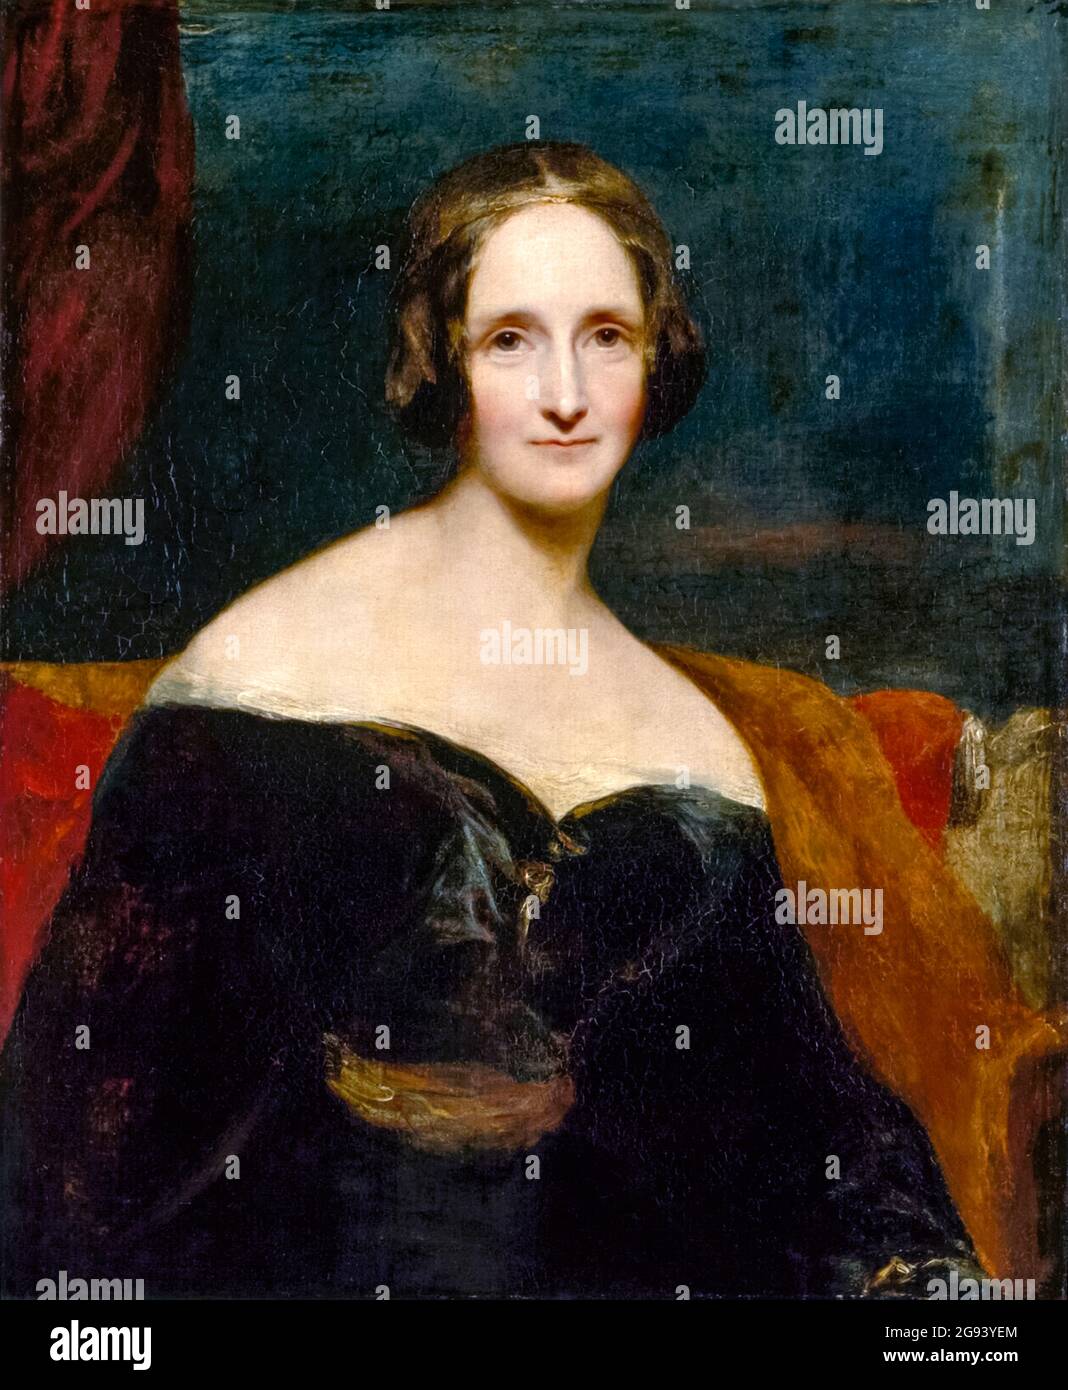 Mary Shelley (1797-1851) est l’écrivain qu’il vaut mieux se souvenir de son roman gothique le plus vendu ‘Frankenstein; or, The Modern Prométhée’ publié pour la première fois en 1818 à propos d’un jeune scientifique qui donne vie à une créature faite des parties de corps humains morts. Photographie d'une peinture à l'huile de 1840 de l'artiste irlandais Richard Rothwell (1800-1868) peint en 1840. Banque D'Images